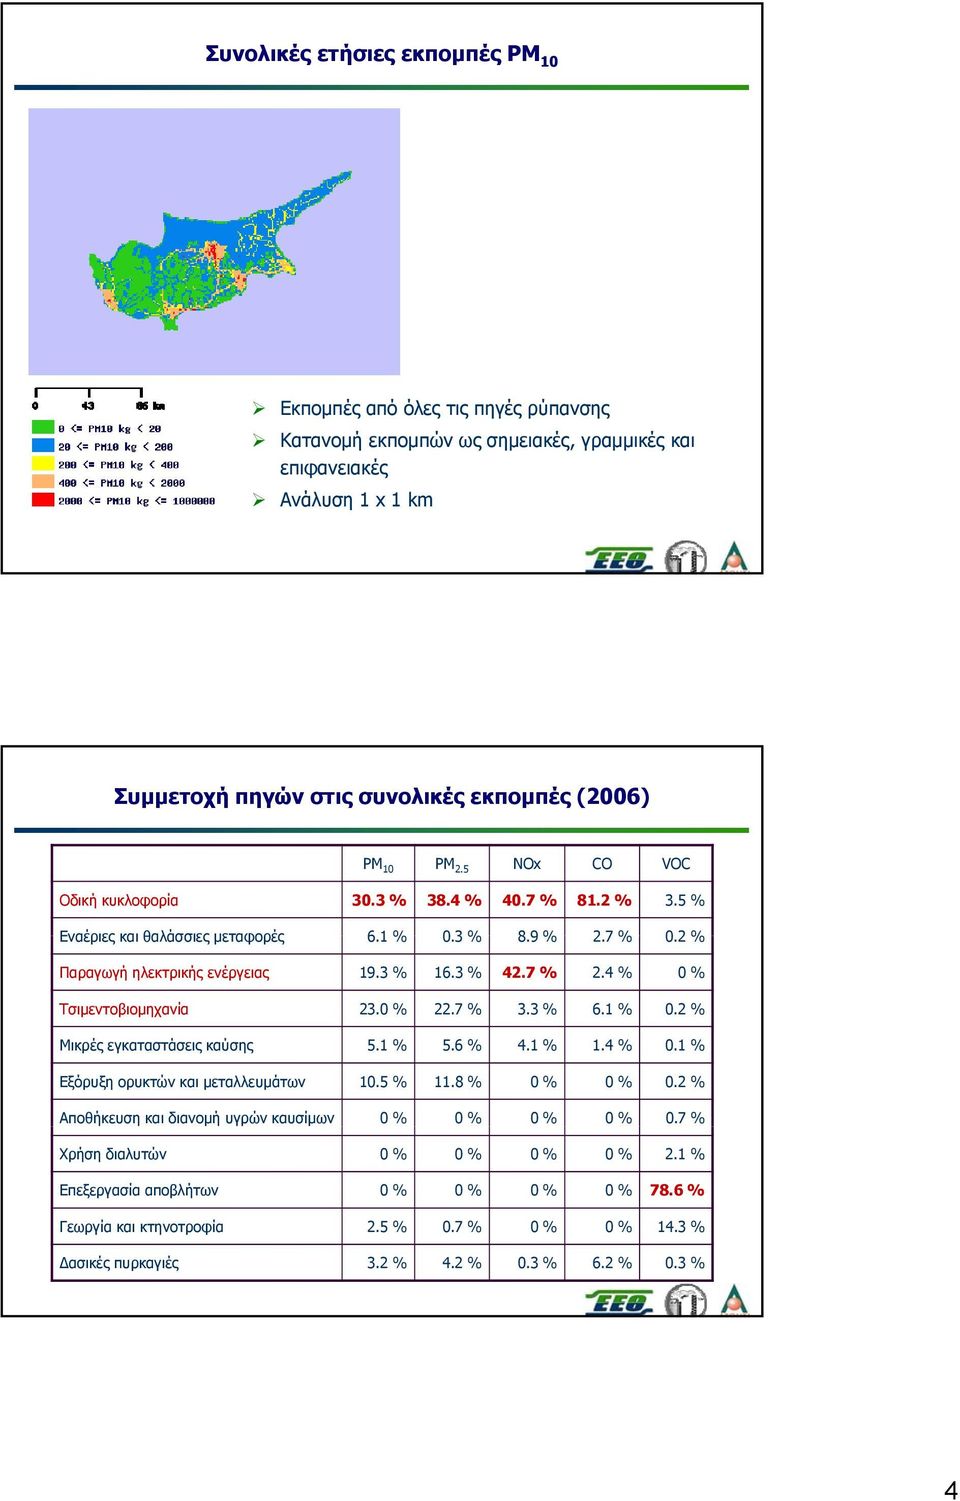 4 % 0 % Τσιμεντοβιομηχανία 23.0 % 22.7 % 3.3 % 6.1 % 0.2 % Μικρές εγκαταστάσεις καύσης 5.1 % 5.6 % 4.1 % 1.4 % 0.1 % Εξόρυξη ορυκτών και μεταλλευμάτων 10.5 % 11.8 % 0 % 0 % 0.